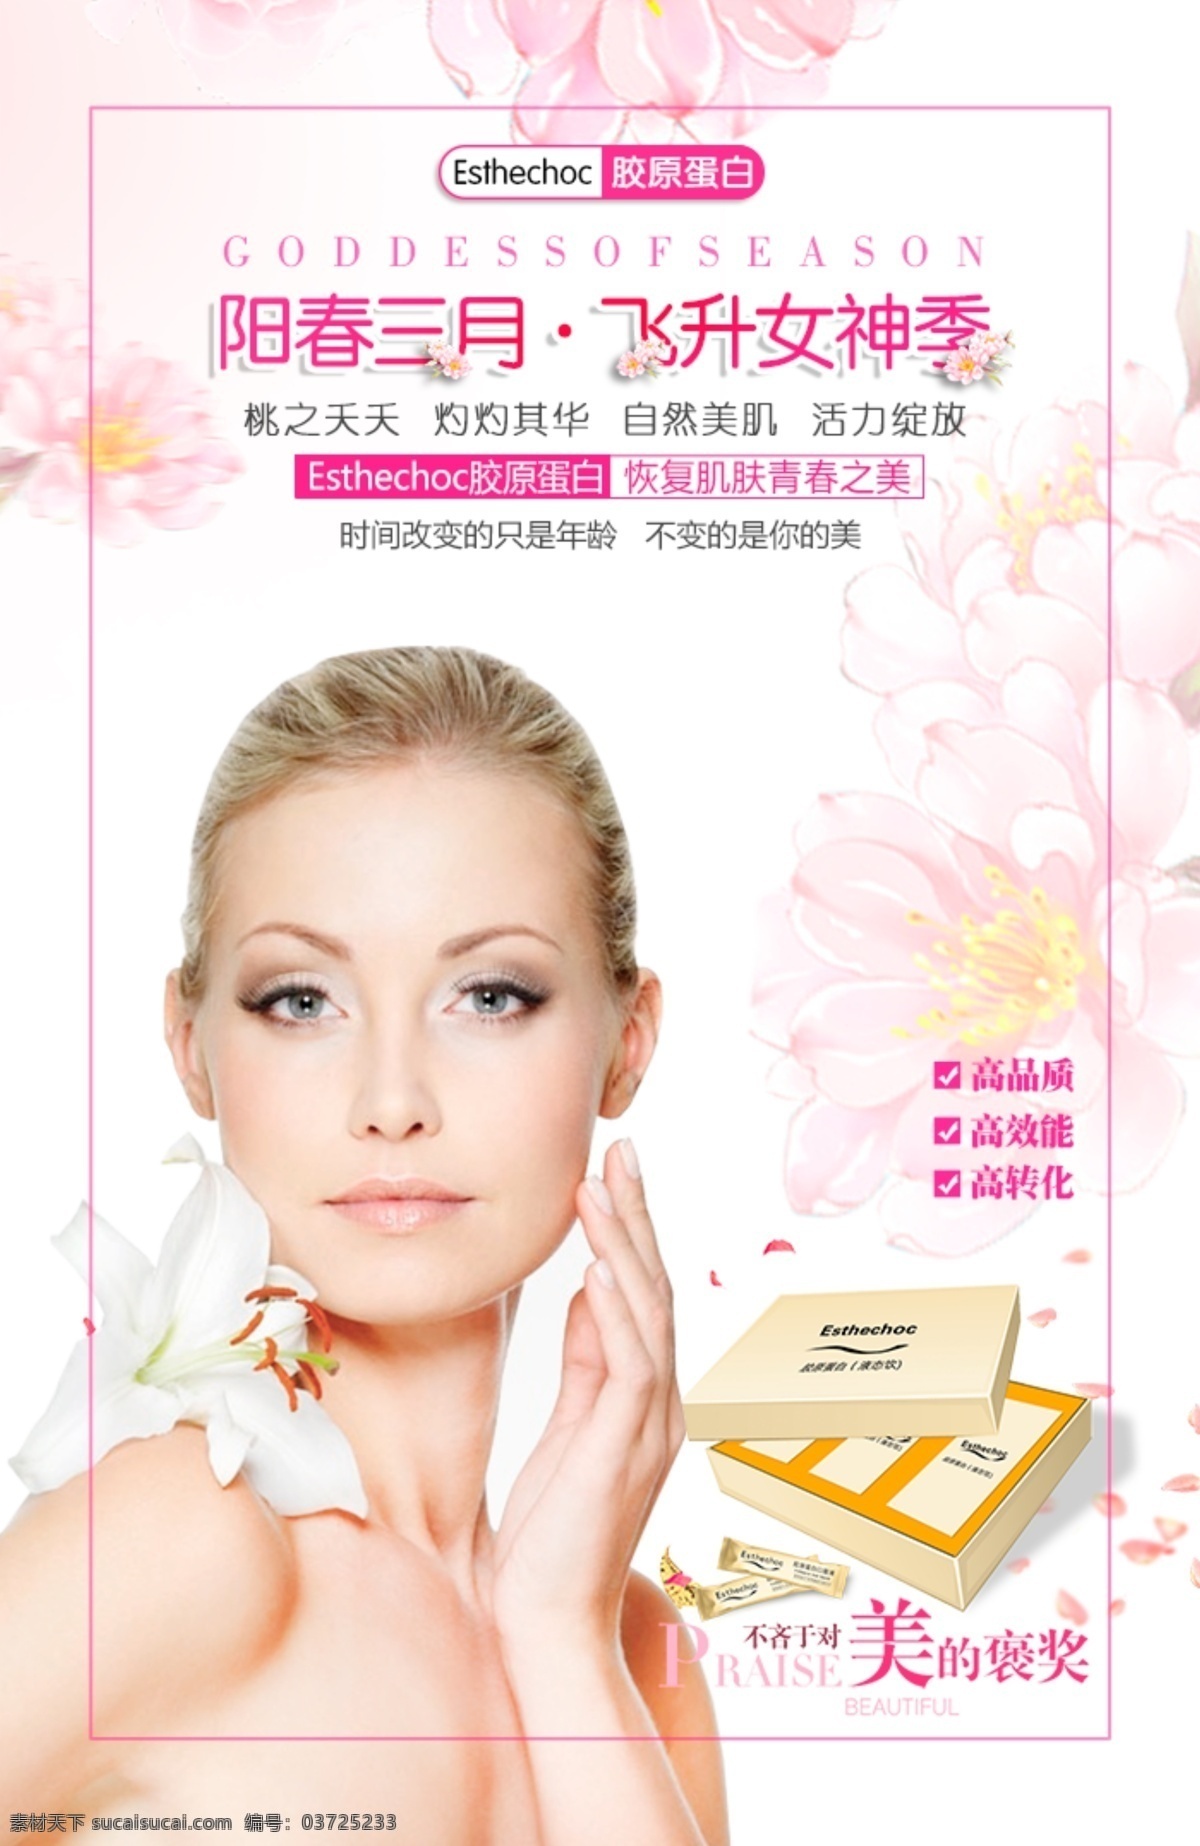 阳春 三月 女性 产品 海报 女性产品海报 产品海报 胶原蛋白 排版设计